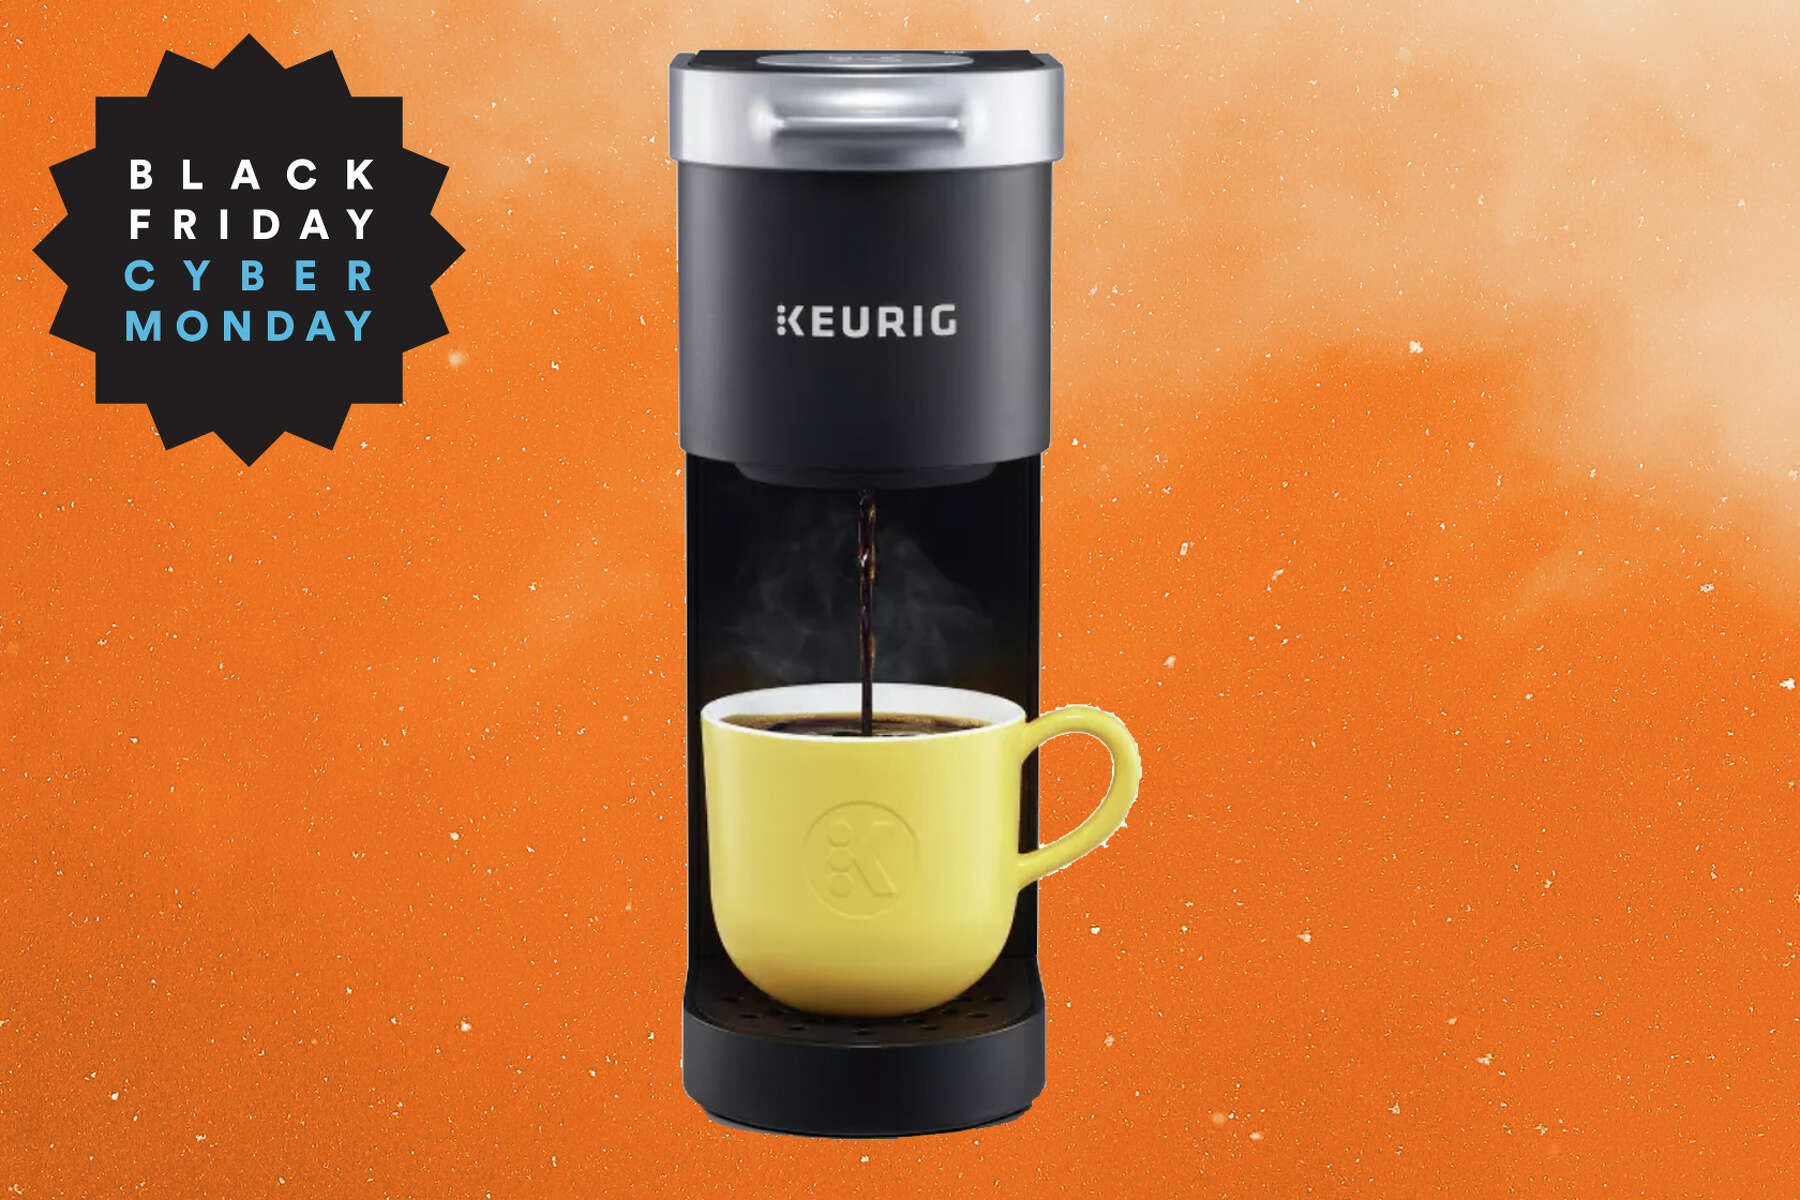 Keurig K-Mini Plus Single Serve Coffee Maker, Black